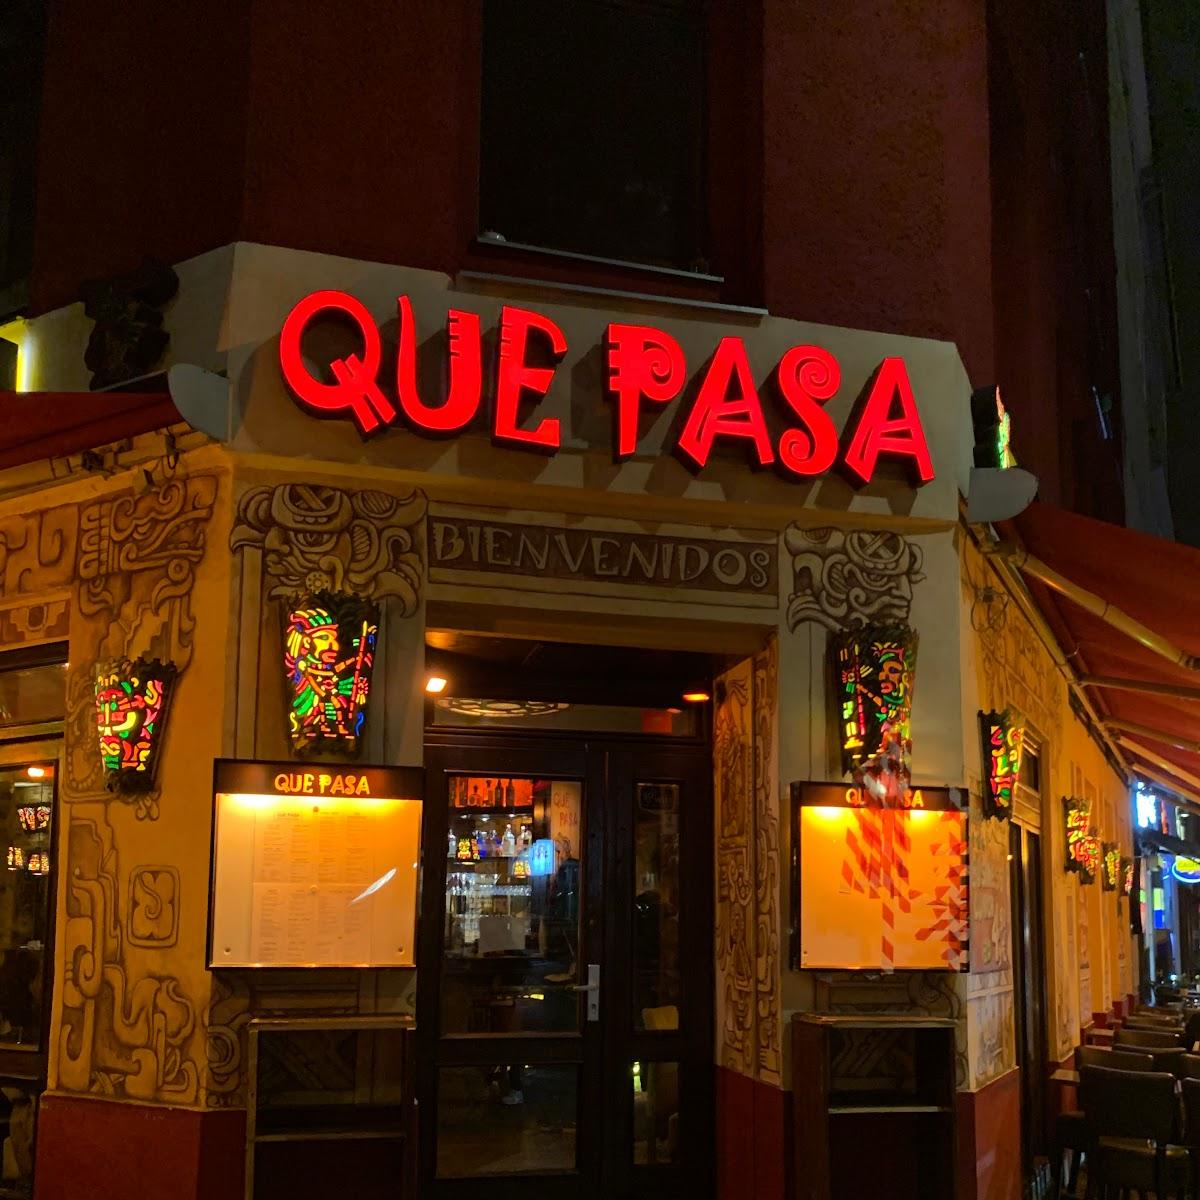 Restaurant "Que Pasa" in Berlin